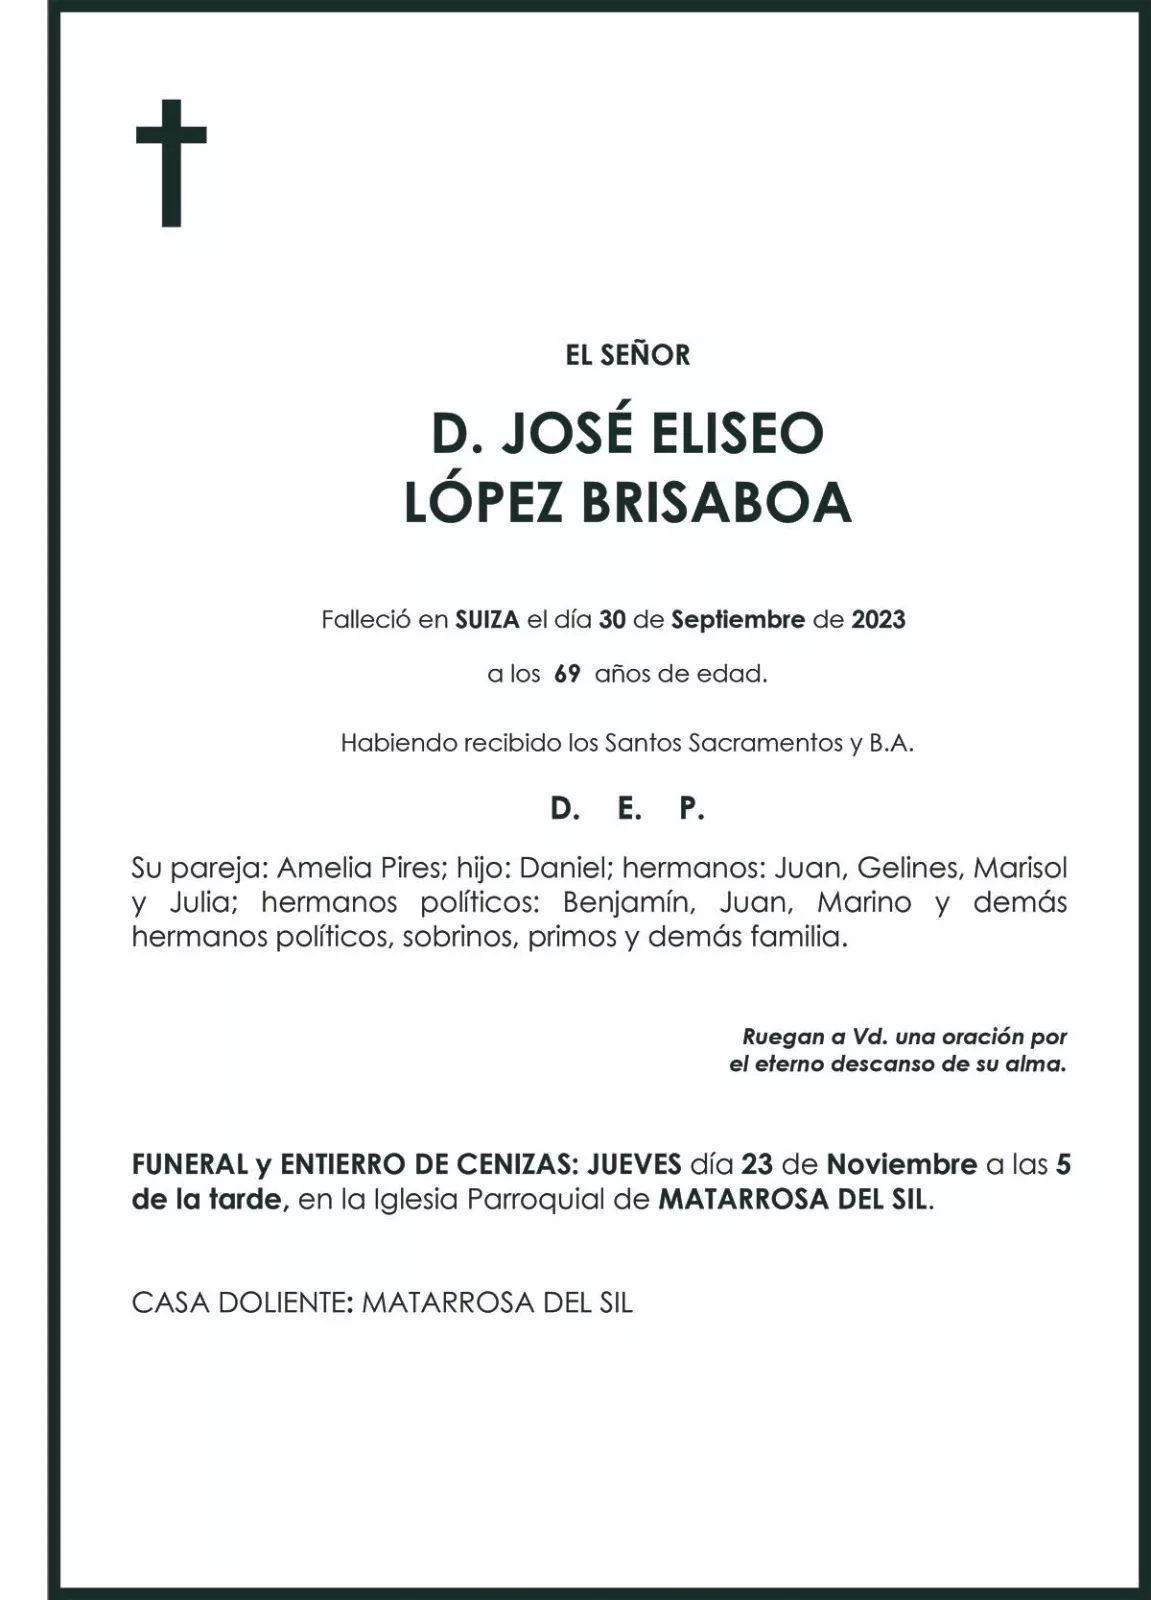 JOSE ELISEO LOPEZ BRISABOA